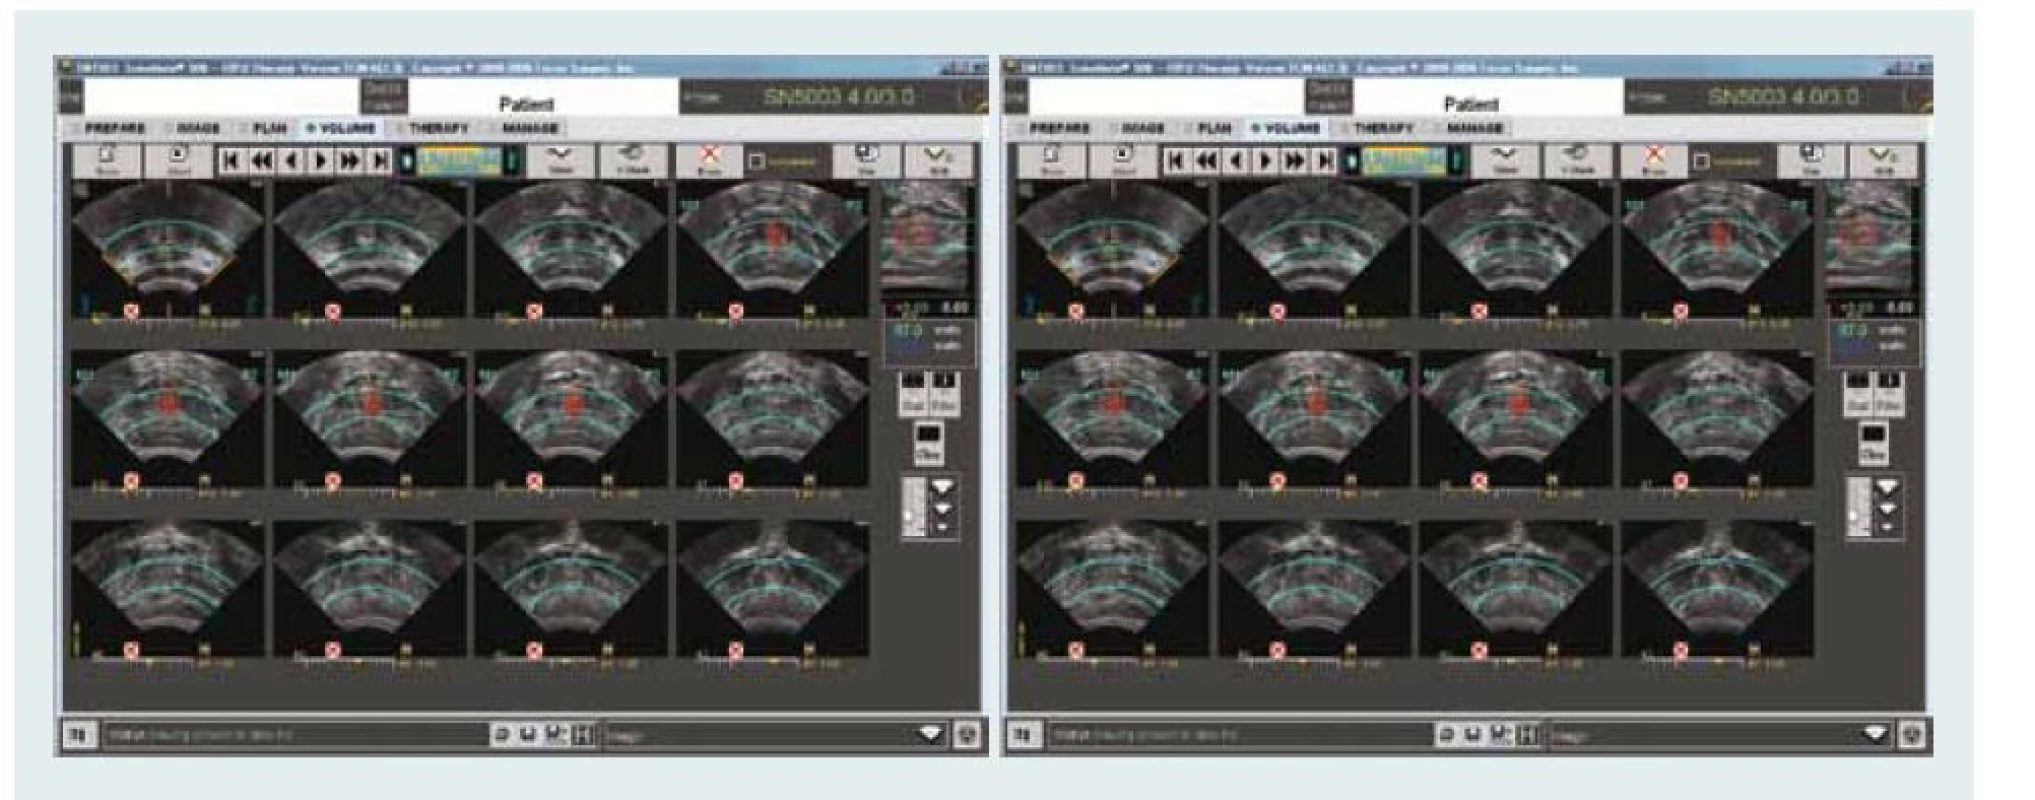 HIFU – kontrolní obrazovka ukazuje příčný řez prostatické žlázy (levá obrazovka) a sagitální řez (pravá obrazovka) s barevně označenou oblastí ablace. 